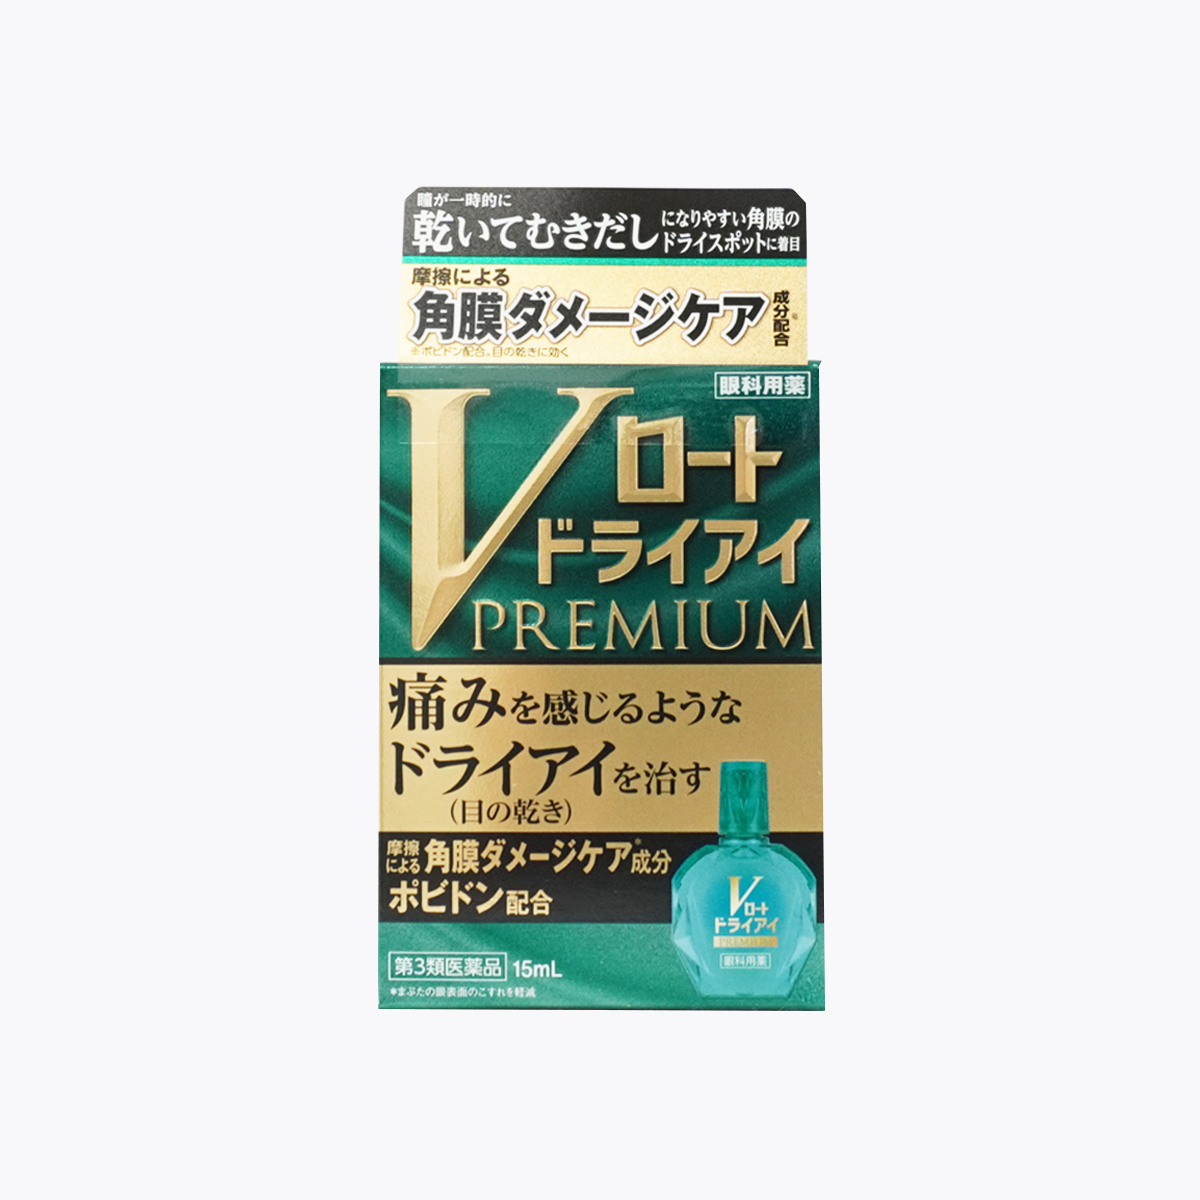 【第3類医薬品】ロート製薬 Vロートドライアイプレミアム 15ml